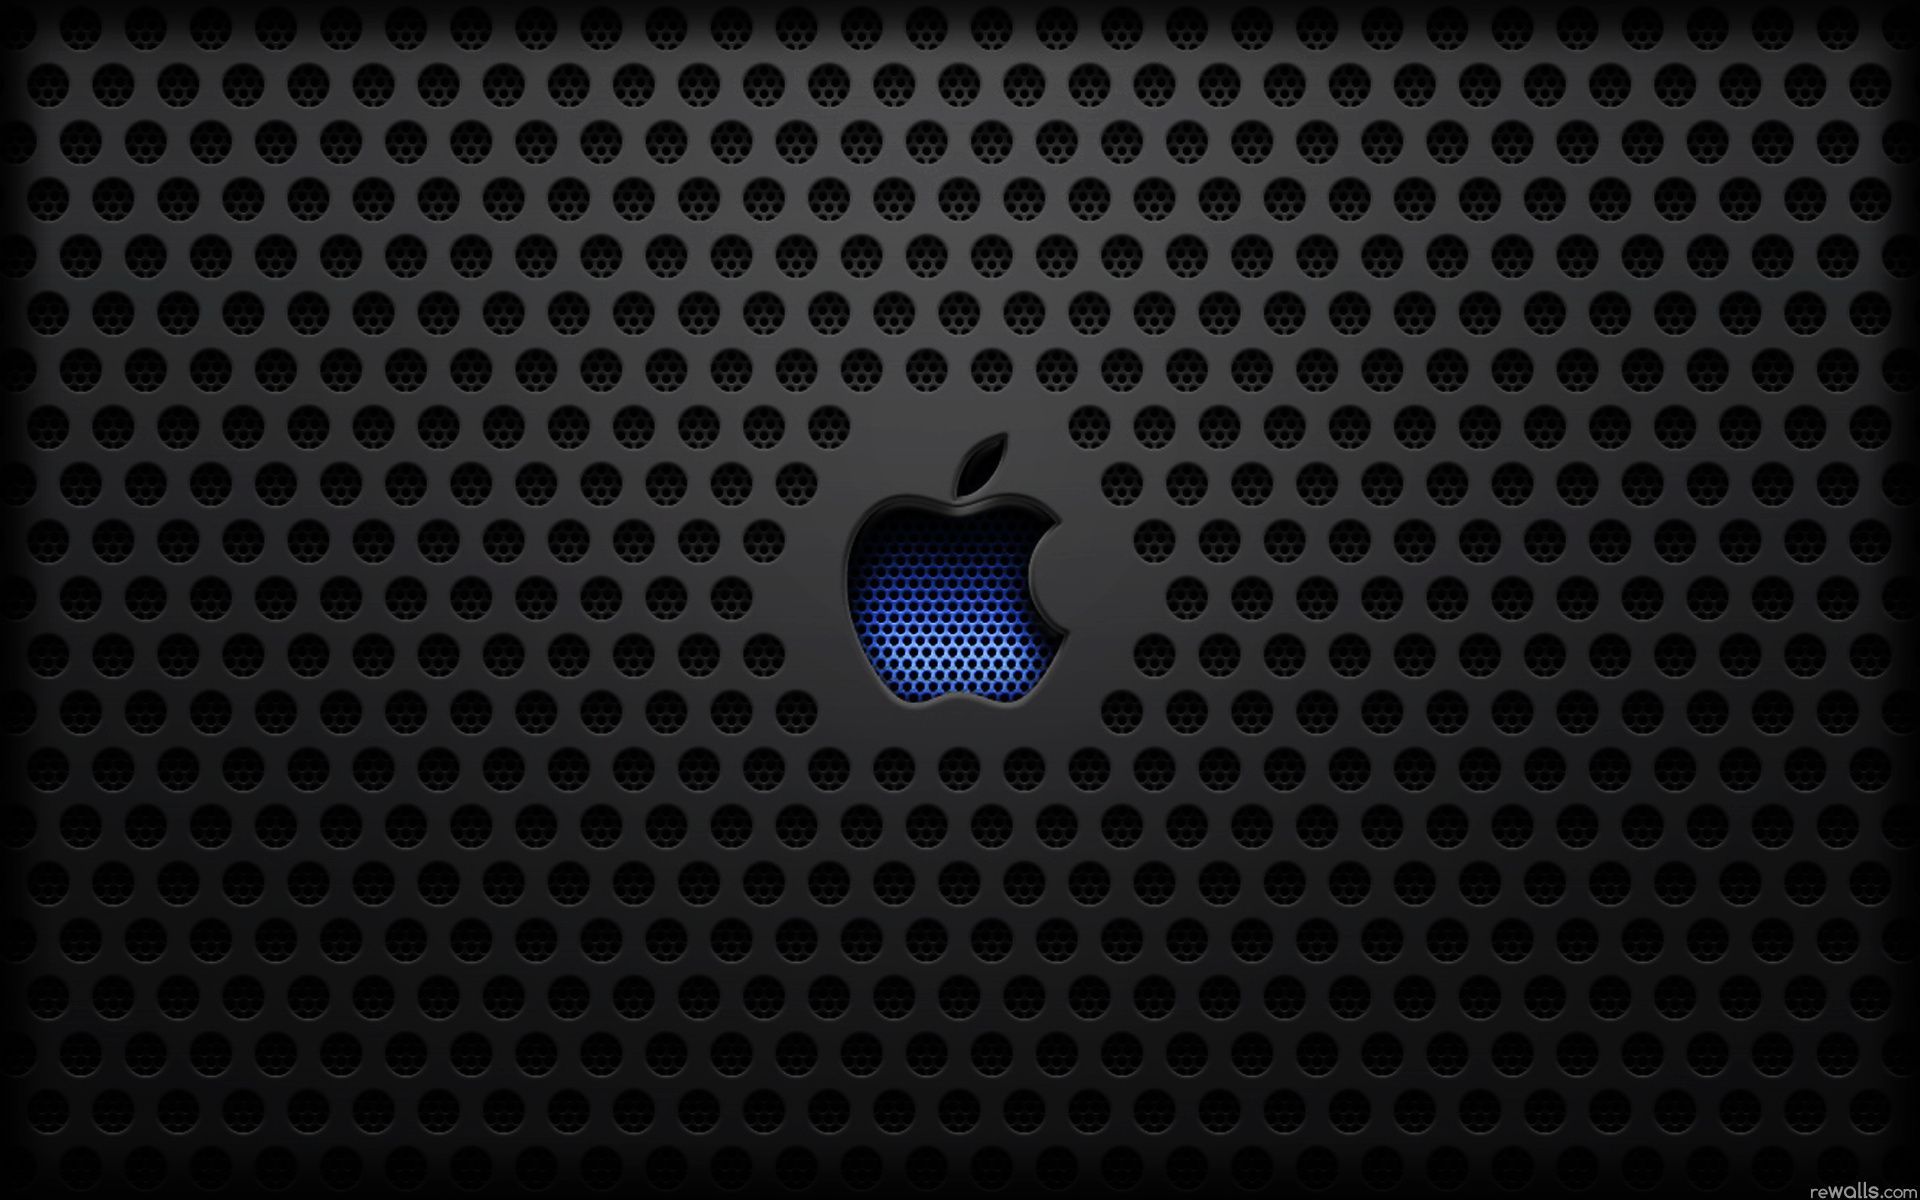 Apple Logo HD Wallpapers